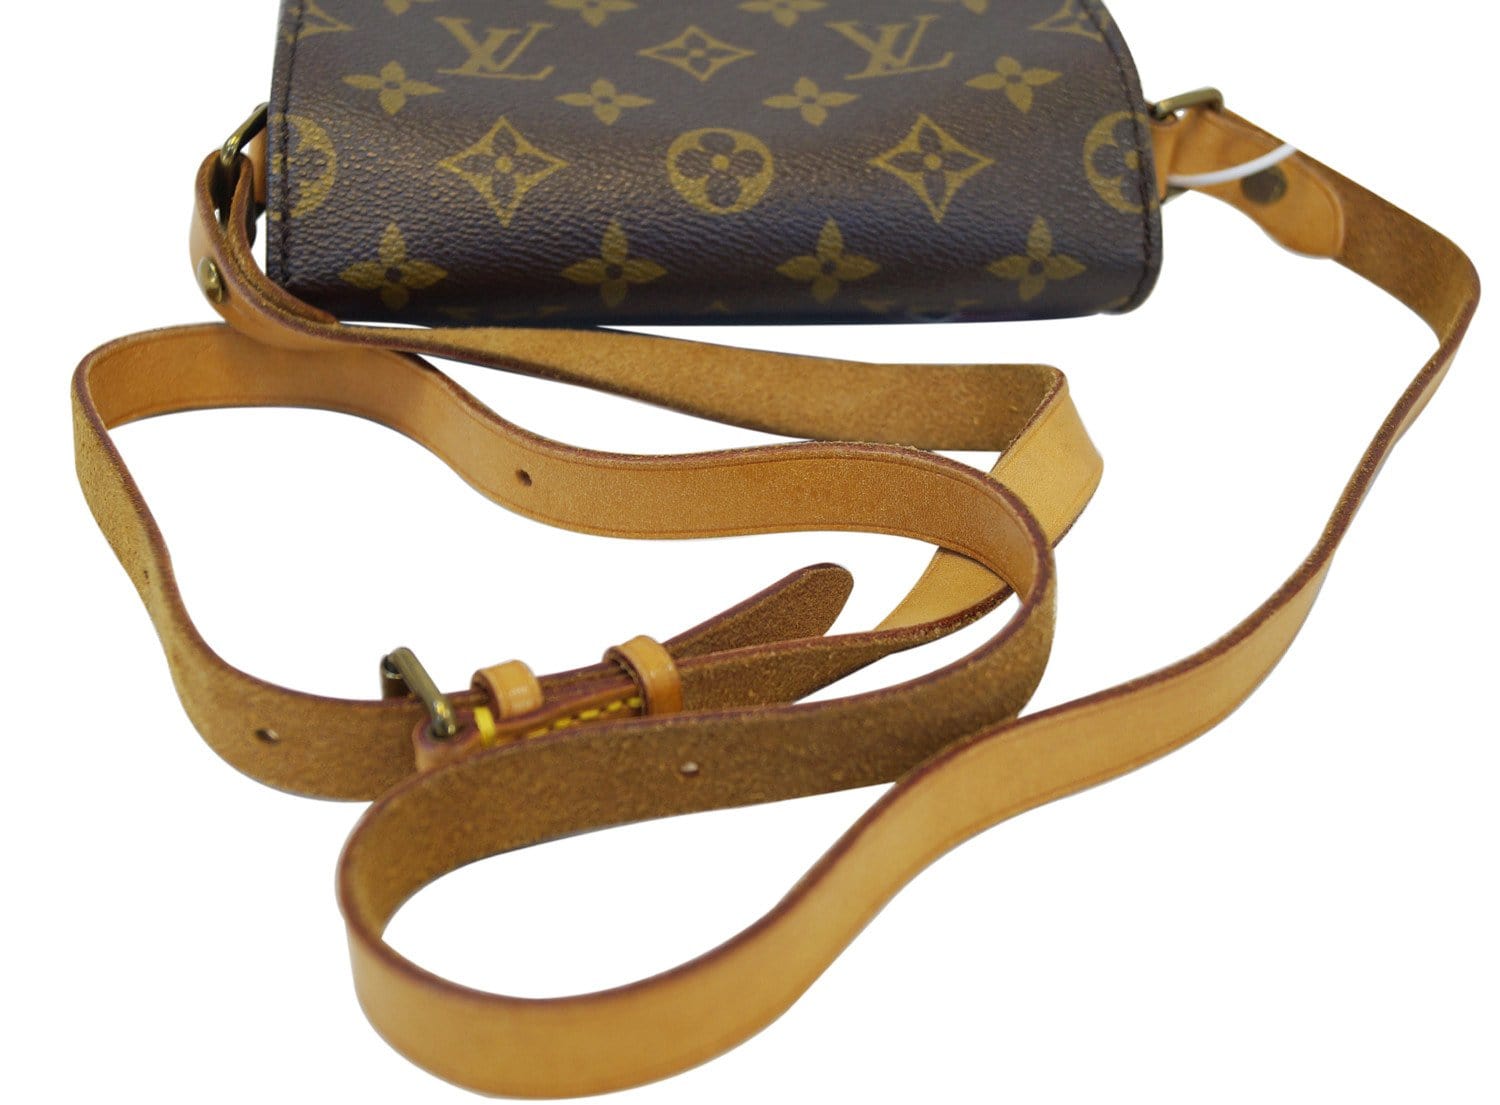 Louis Vuitton, Bags, Louis Vuitton Cartouchiere Pm Monogram Shoulder Bag  M5254 Monogram Canvas Women